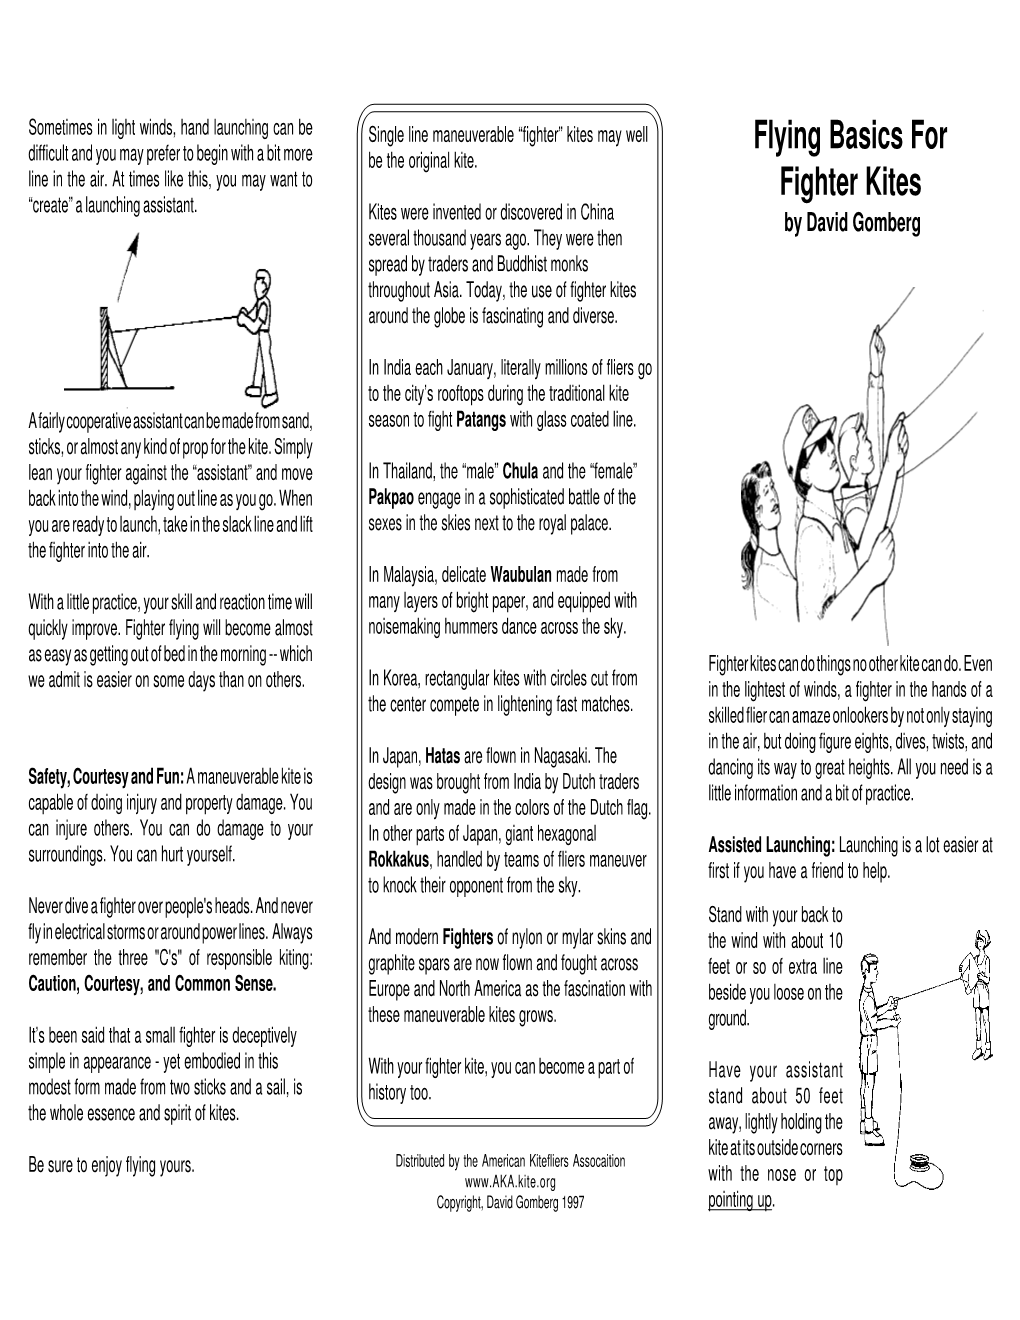 Flying Basics for Fighter Kites